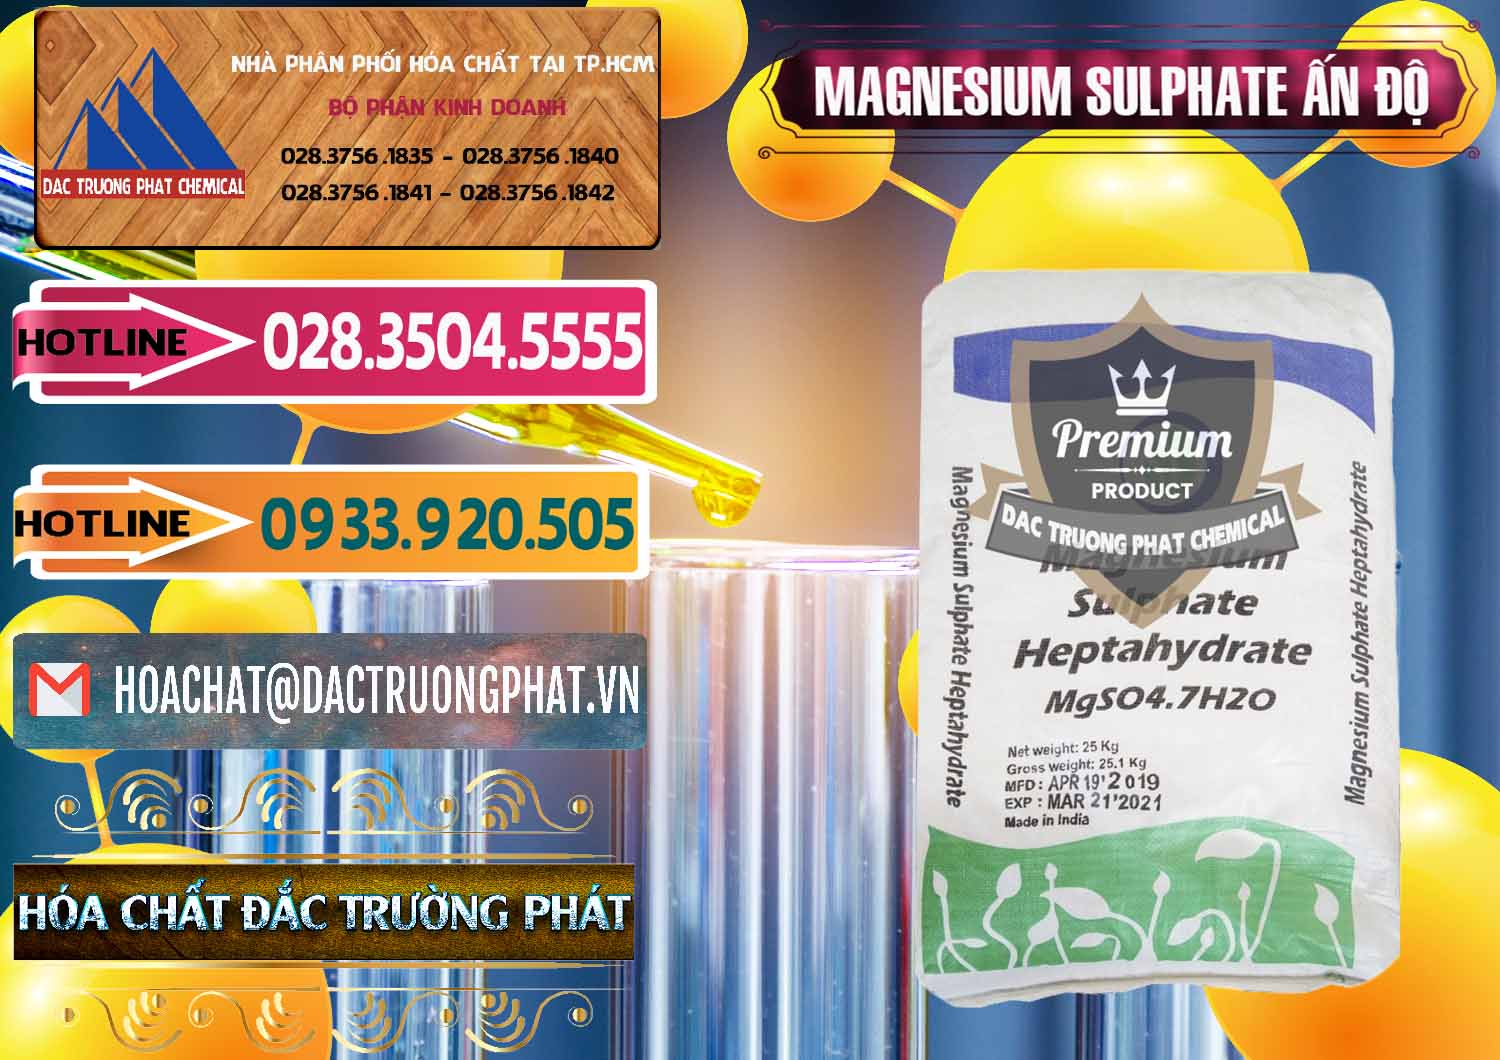 Chuyên bán _ phân phối MGSO4.7H2O – Magnesium Sulphate Heptahydrate Ấn Độ India - 0362 - Nơi chuyên cung ứng - phân phối hóa chất tại TP.HCM - dactruongphat.vn